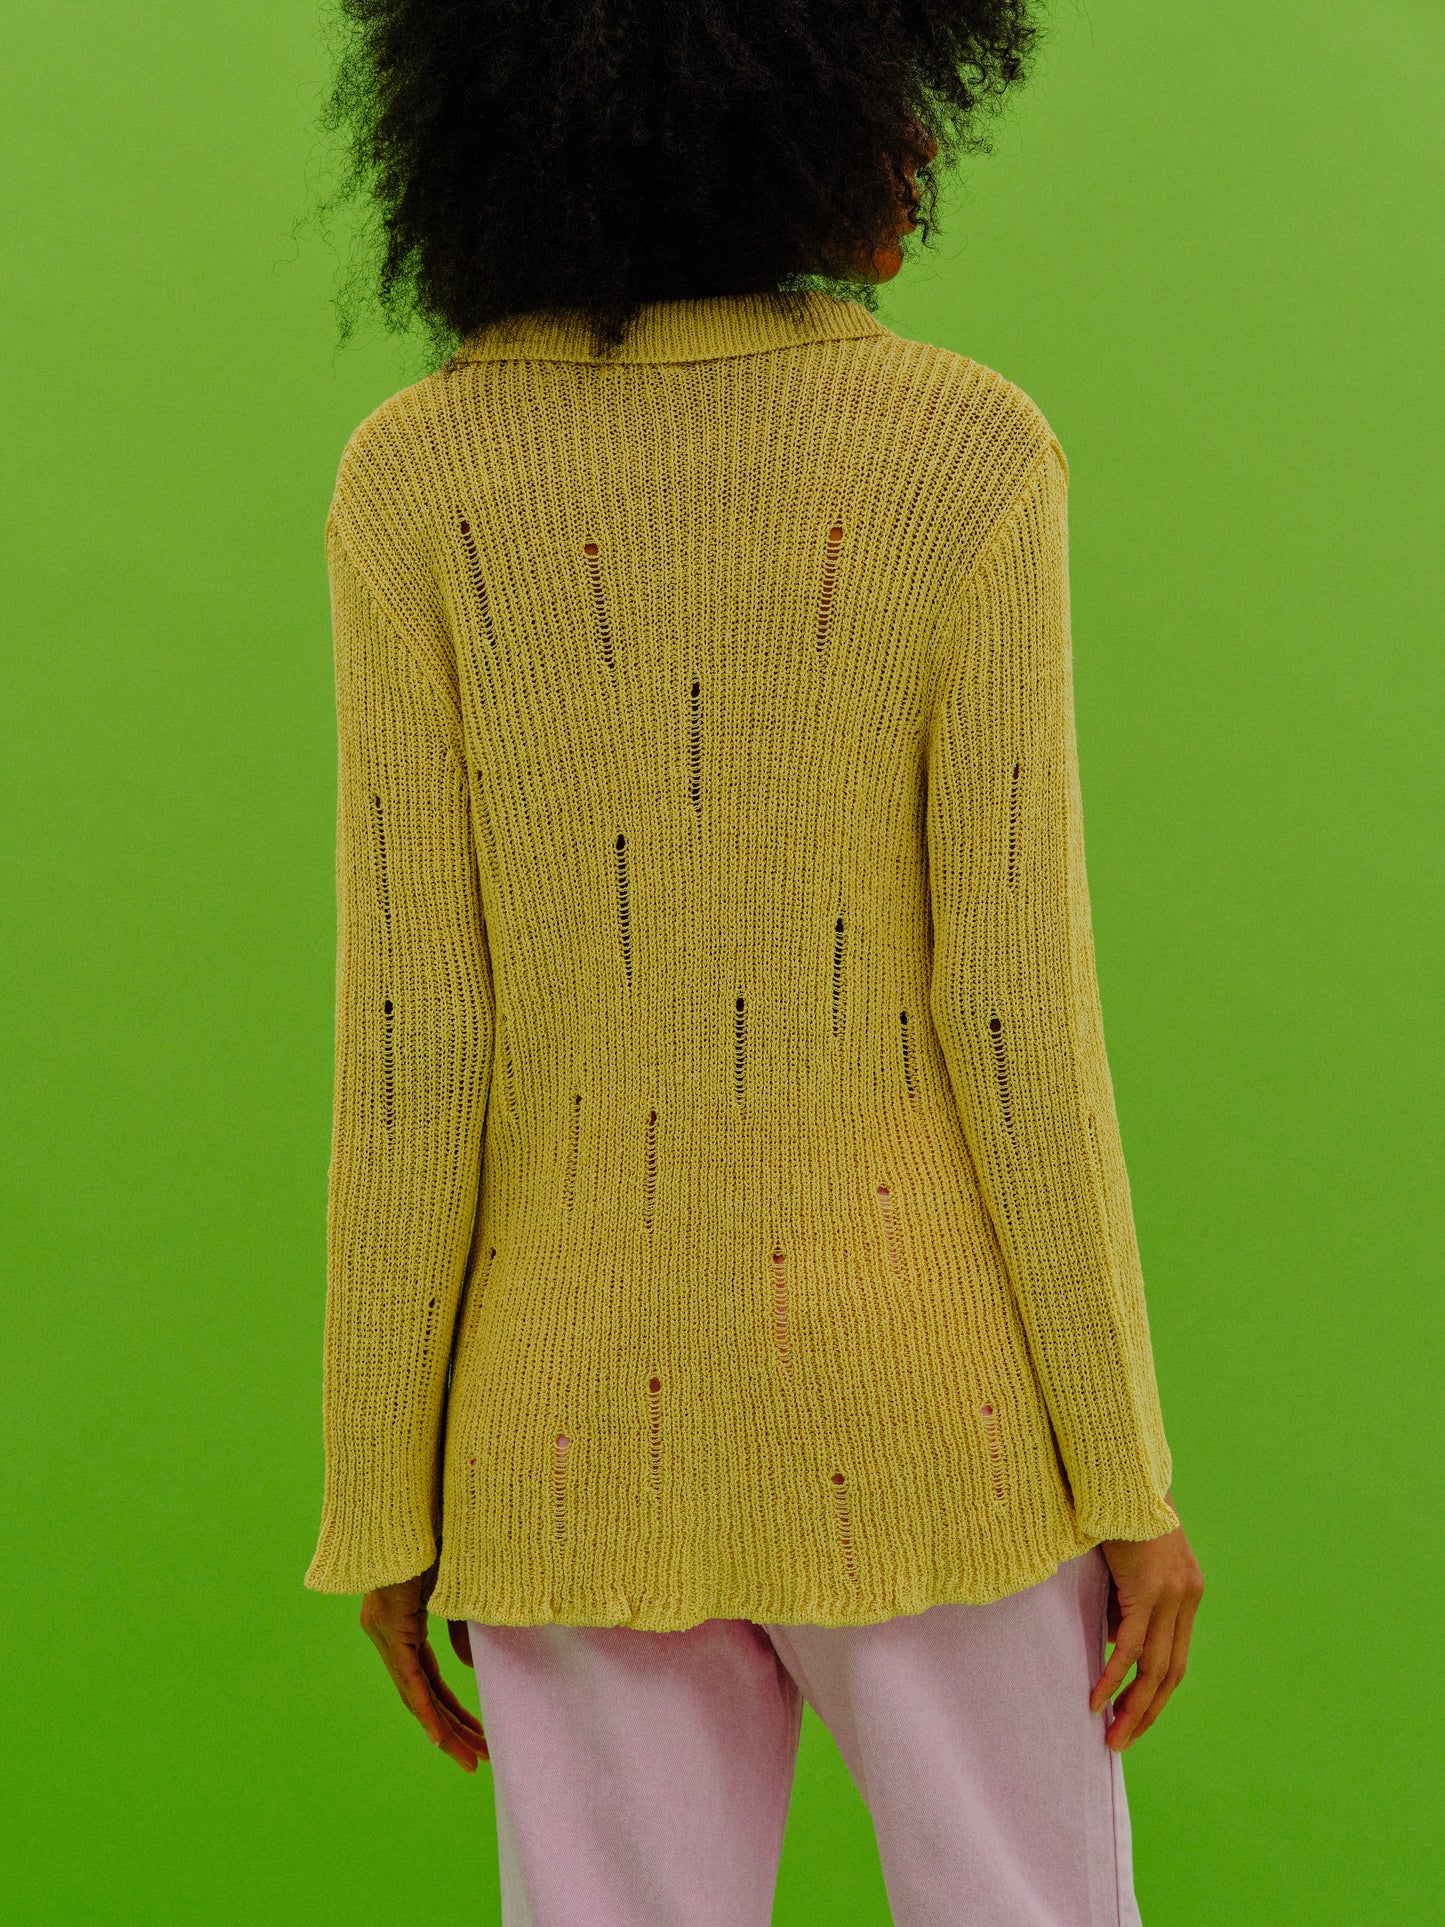 Shredded Knit Shirt, Butter Yellow